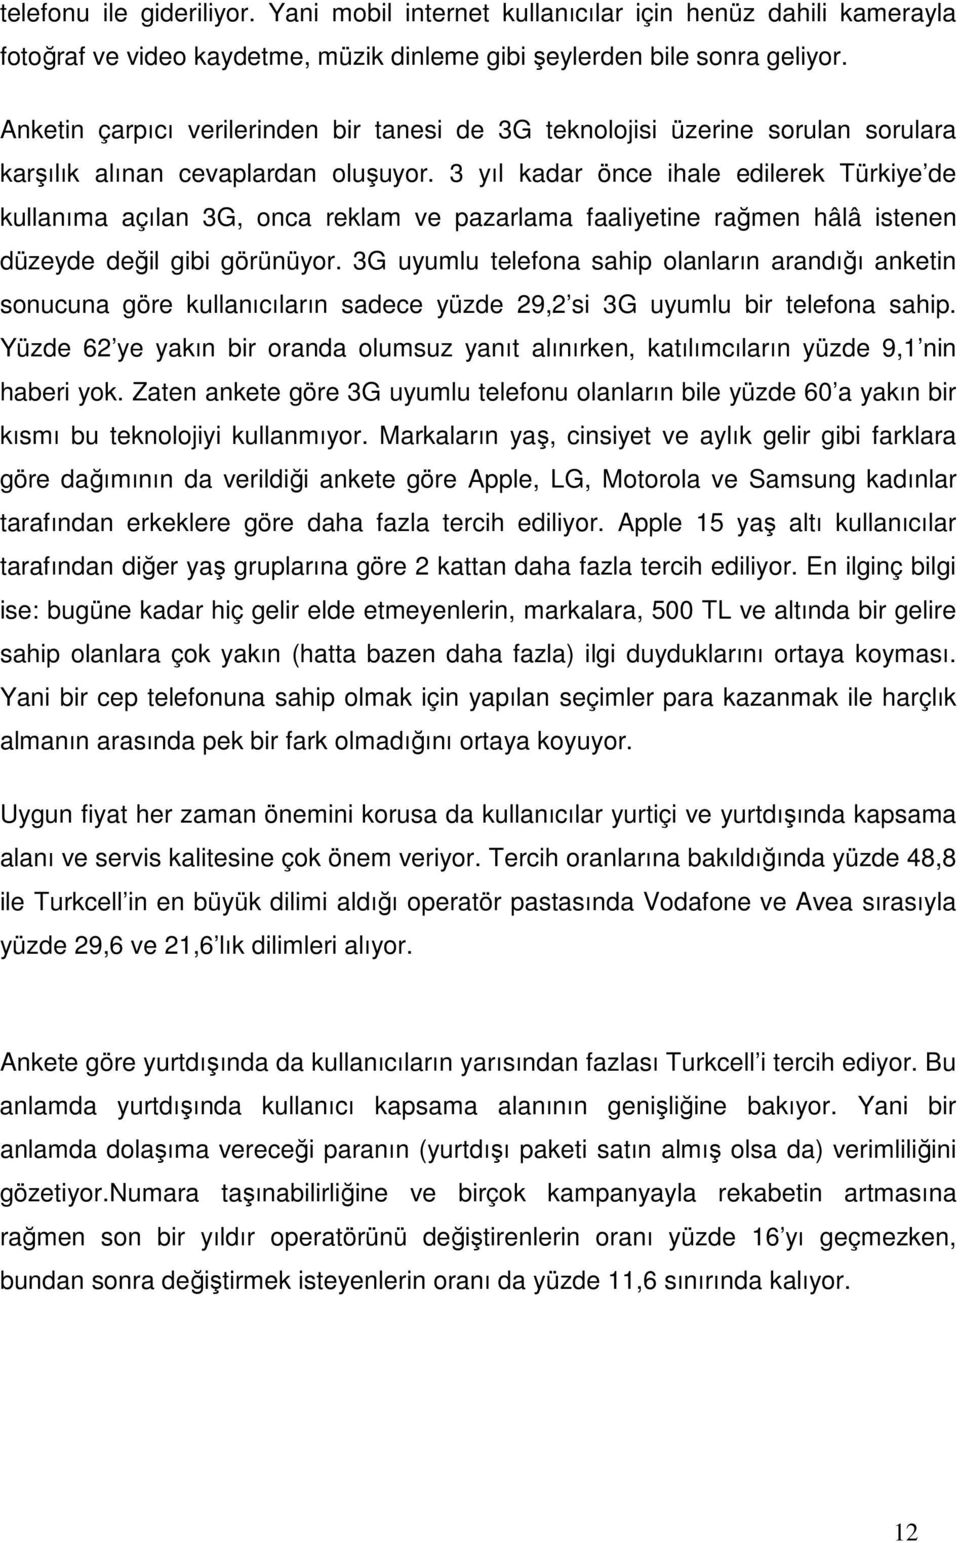 3 yıl kadar önce ihale edilerek Türkiye de kullanıma açılan 3G, onca reklam ve pazarlama faaliyetine rağmen hâlâ istenen düzeyde değil gibi görünüyor.